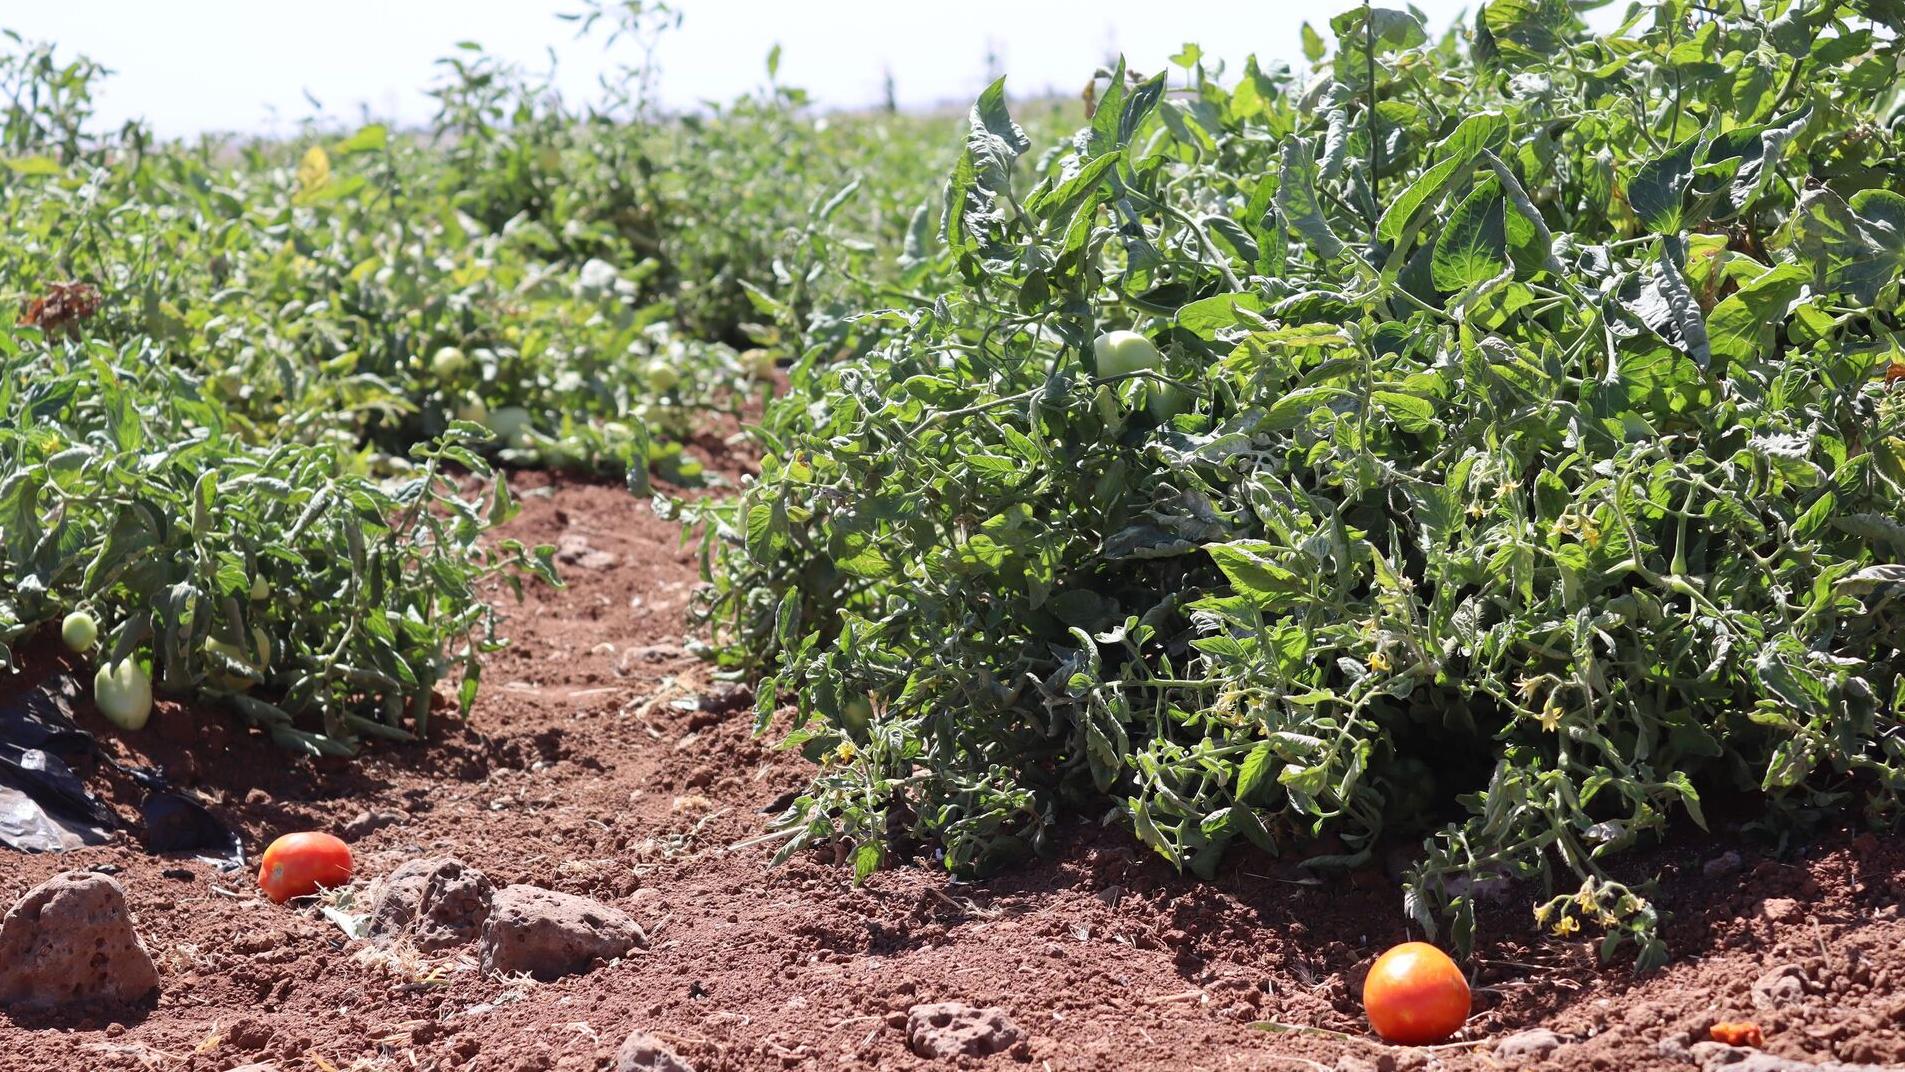 خطة زراعة البندورة في درعا تجاوزت المقرر بـ 3 آلاف هكتار